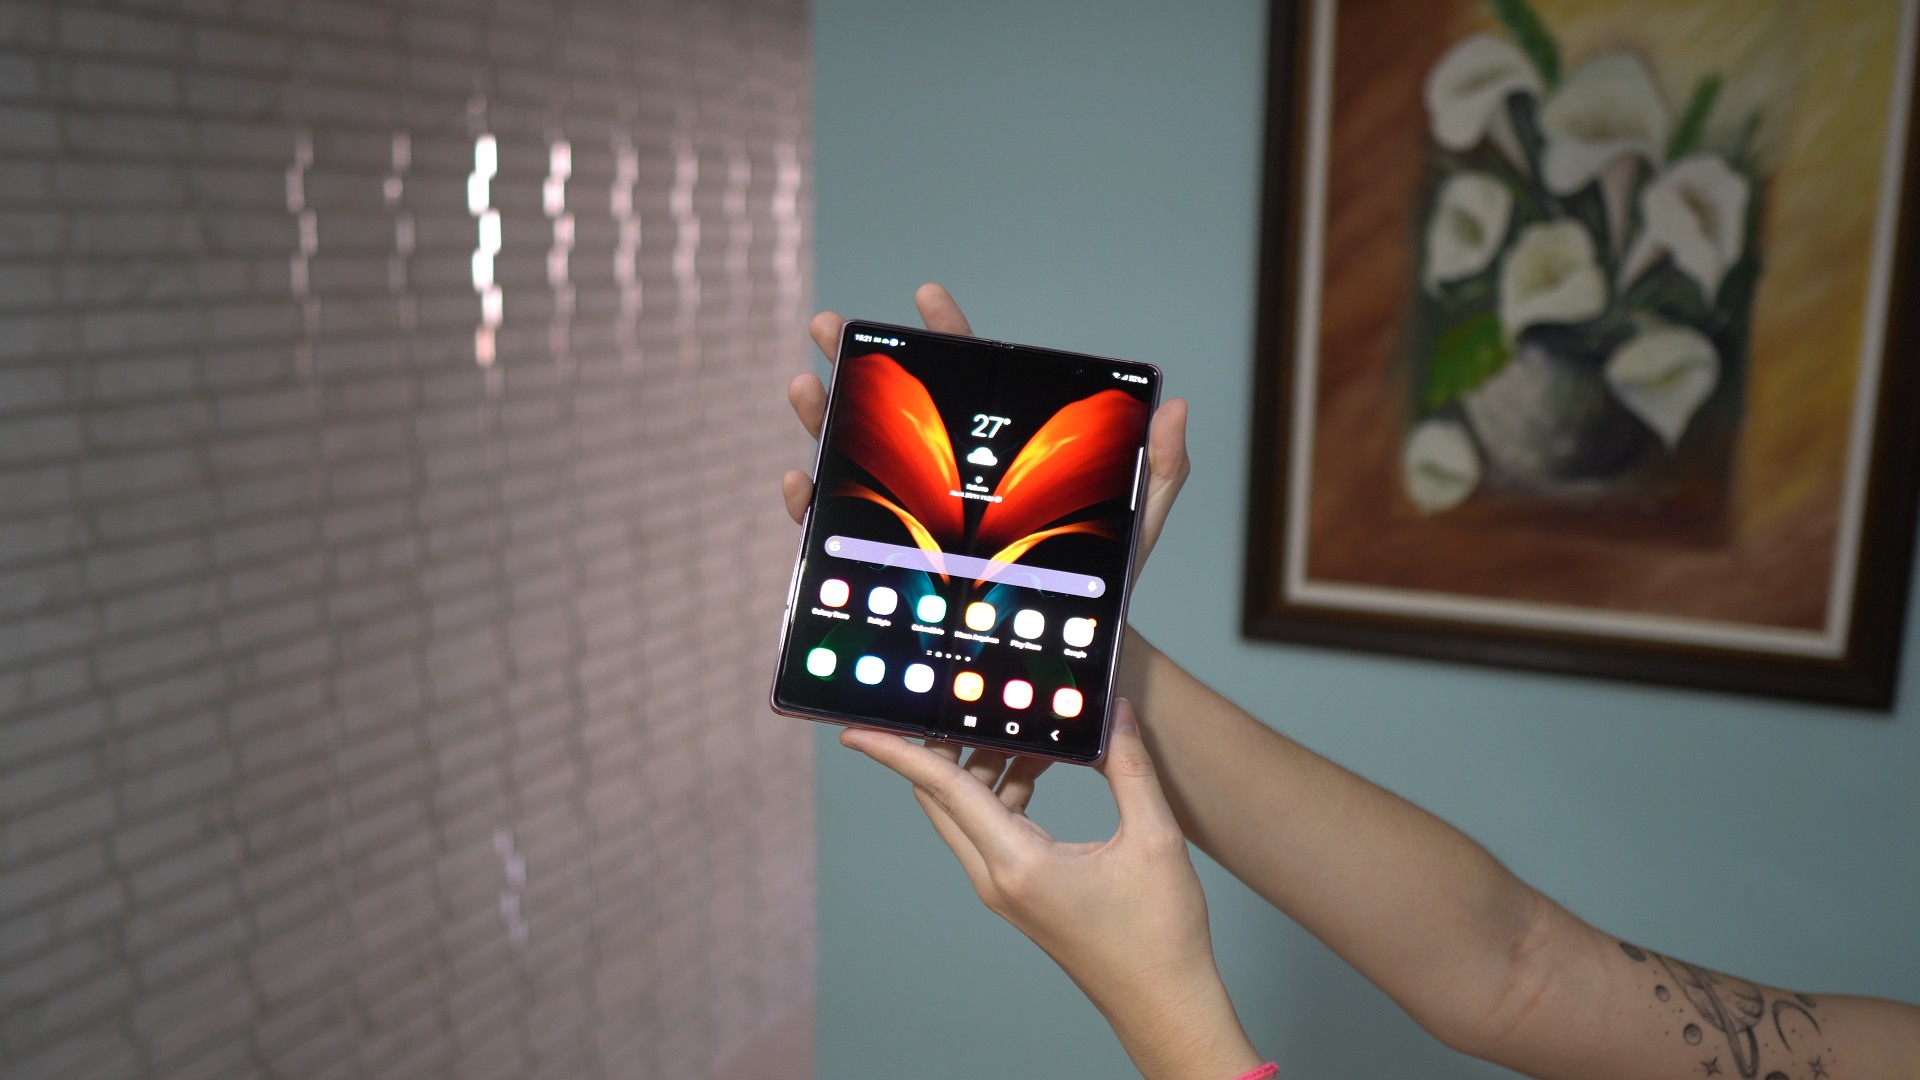 Galaxy Z Fold 2 comea a receber atualizao com Android 12 e One UI 4.0 estvel